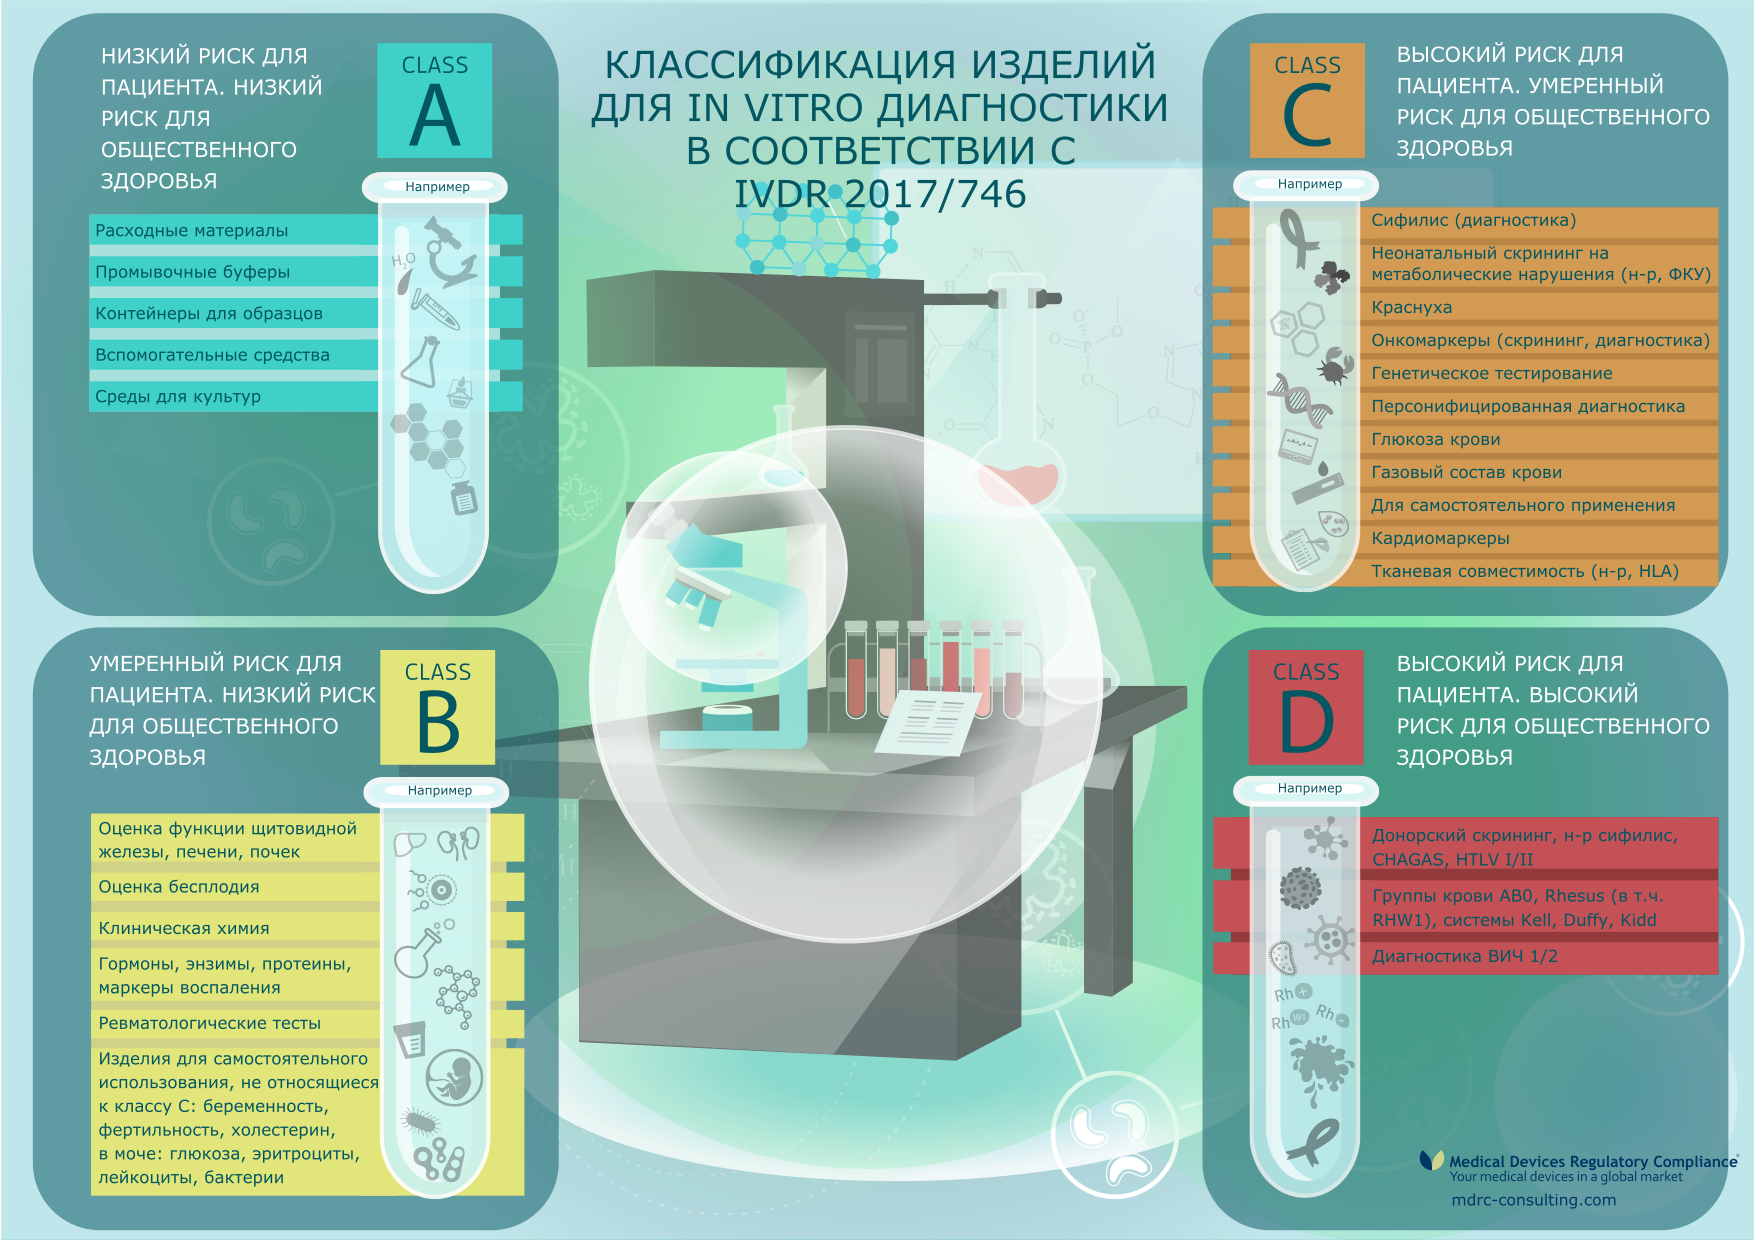 Классификация изделий для in vitro диагностики в ЕС - инфографика